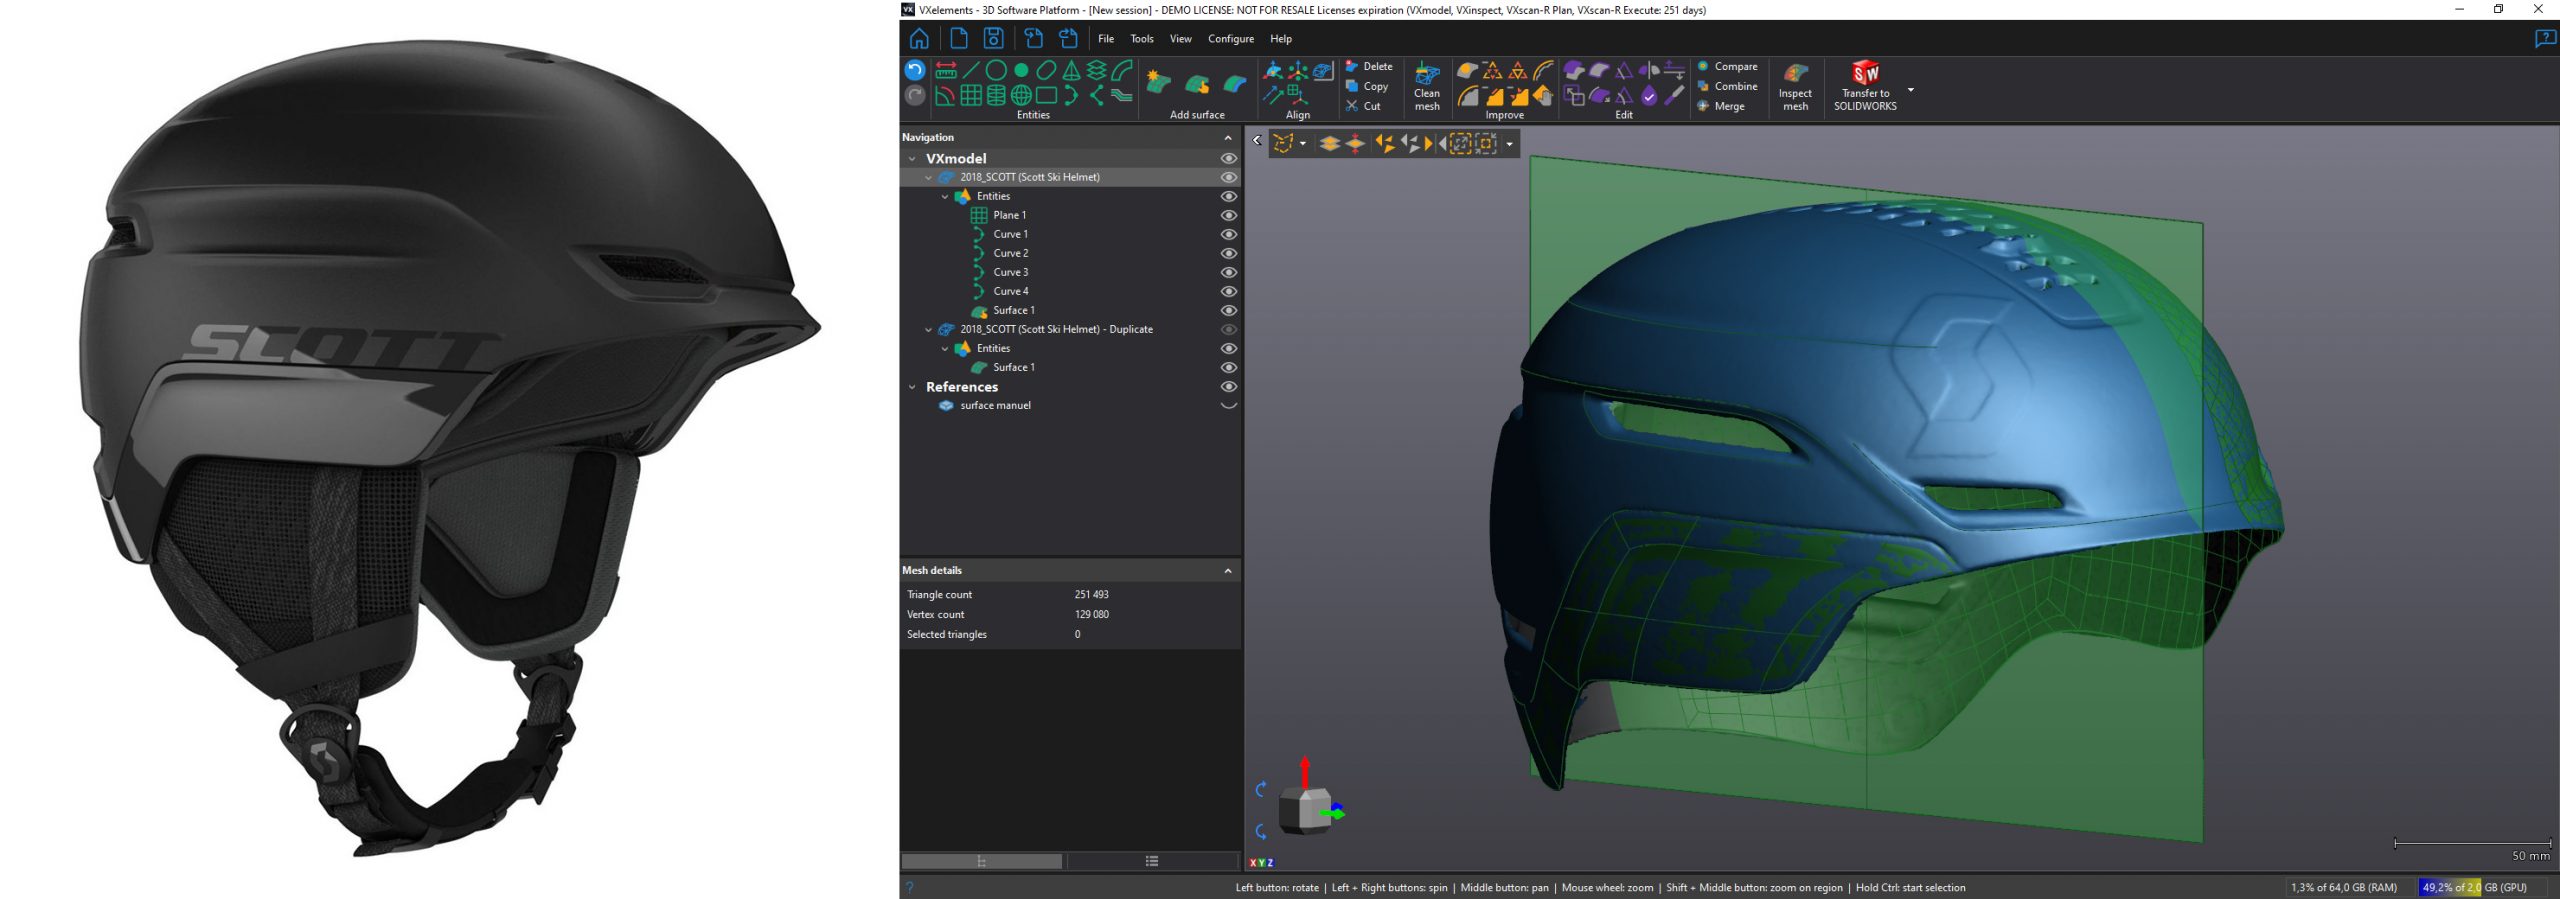 Comparação de um capacete de ski real e um modelo 3D do capacete no software VXelements